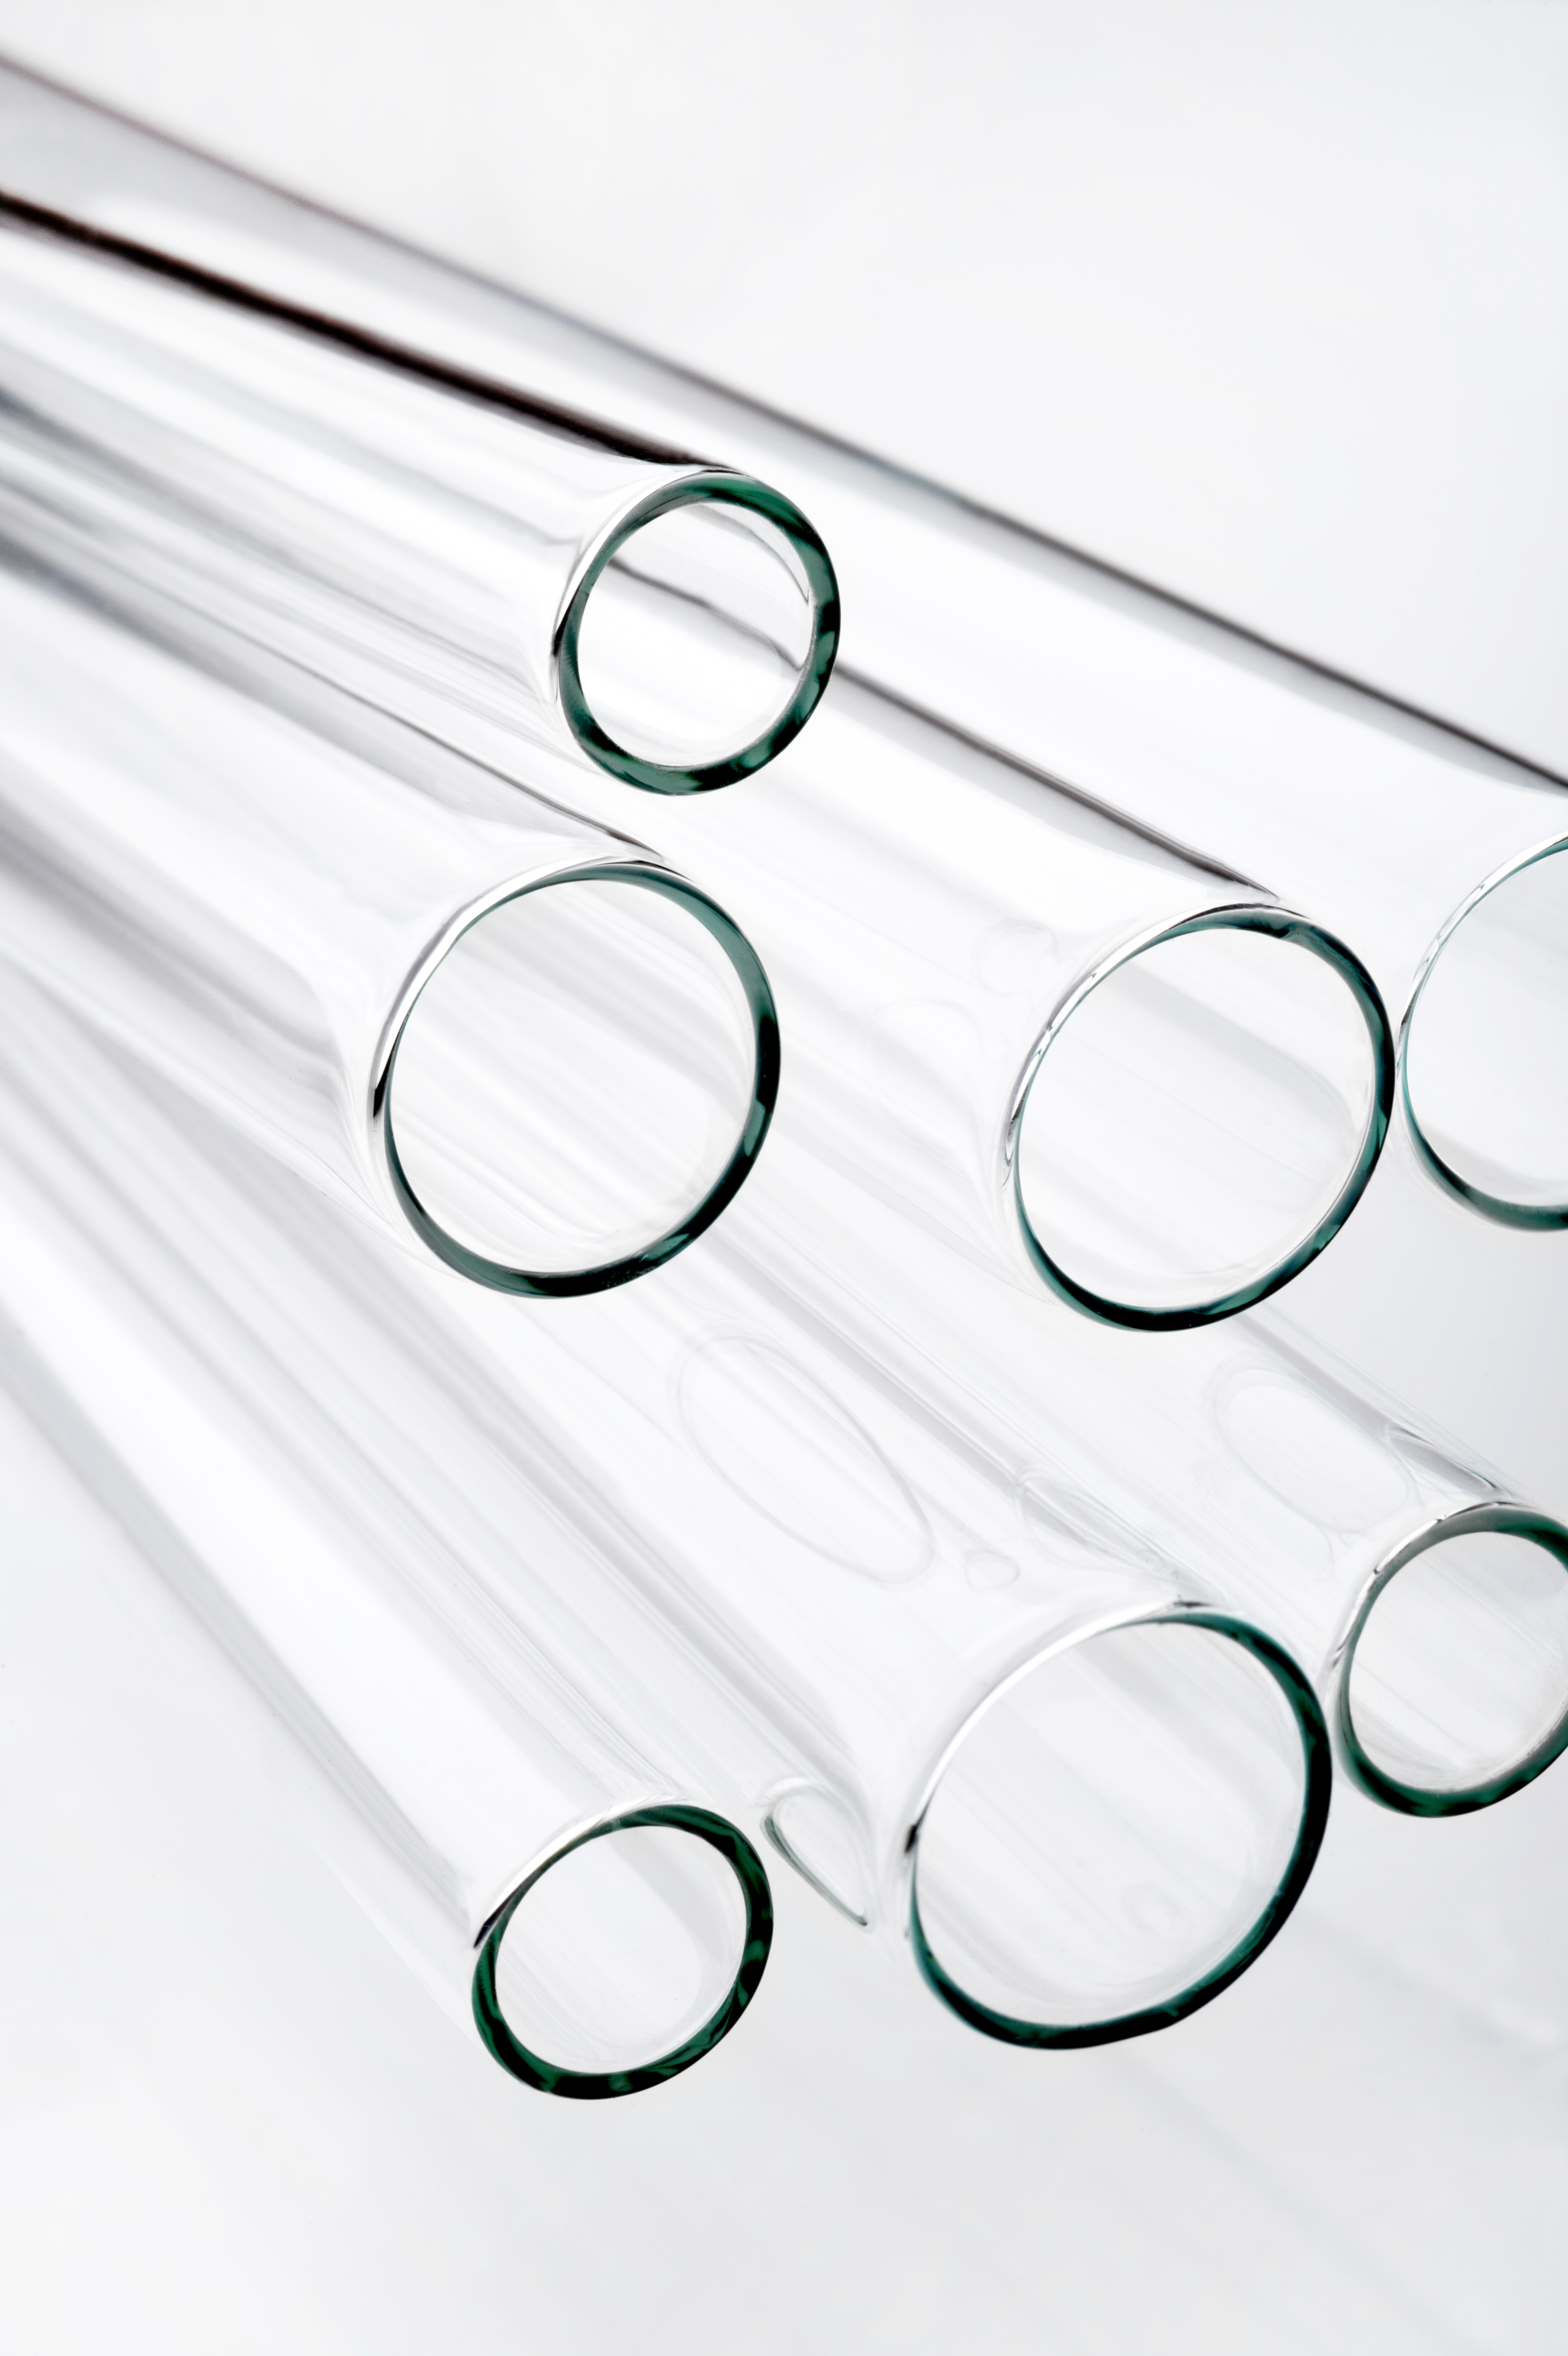 Corning® 51-C Clear Borosilicate Glass Tubing